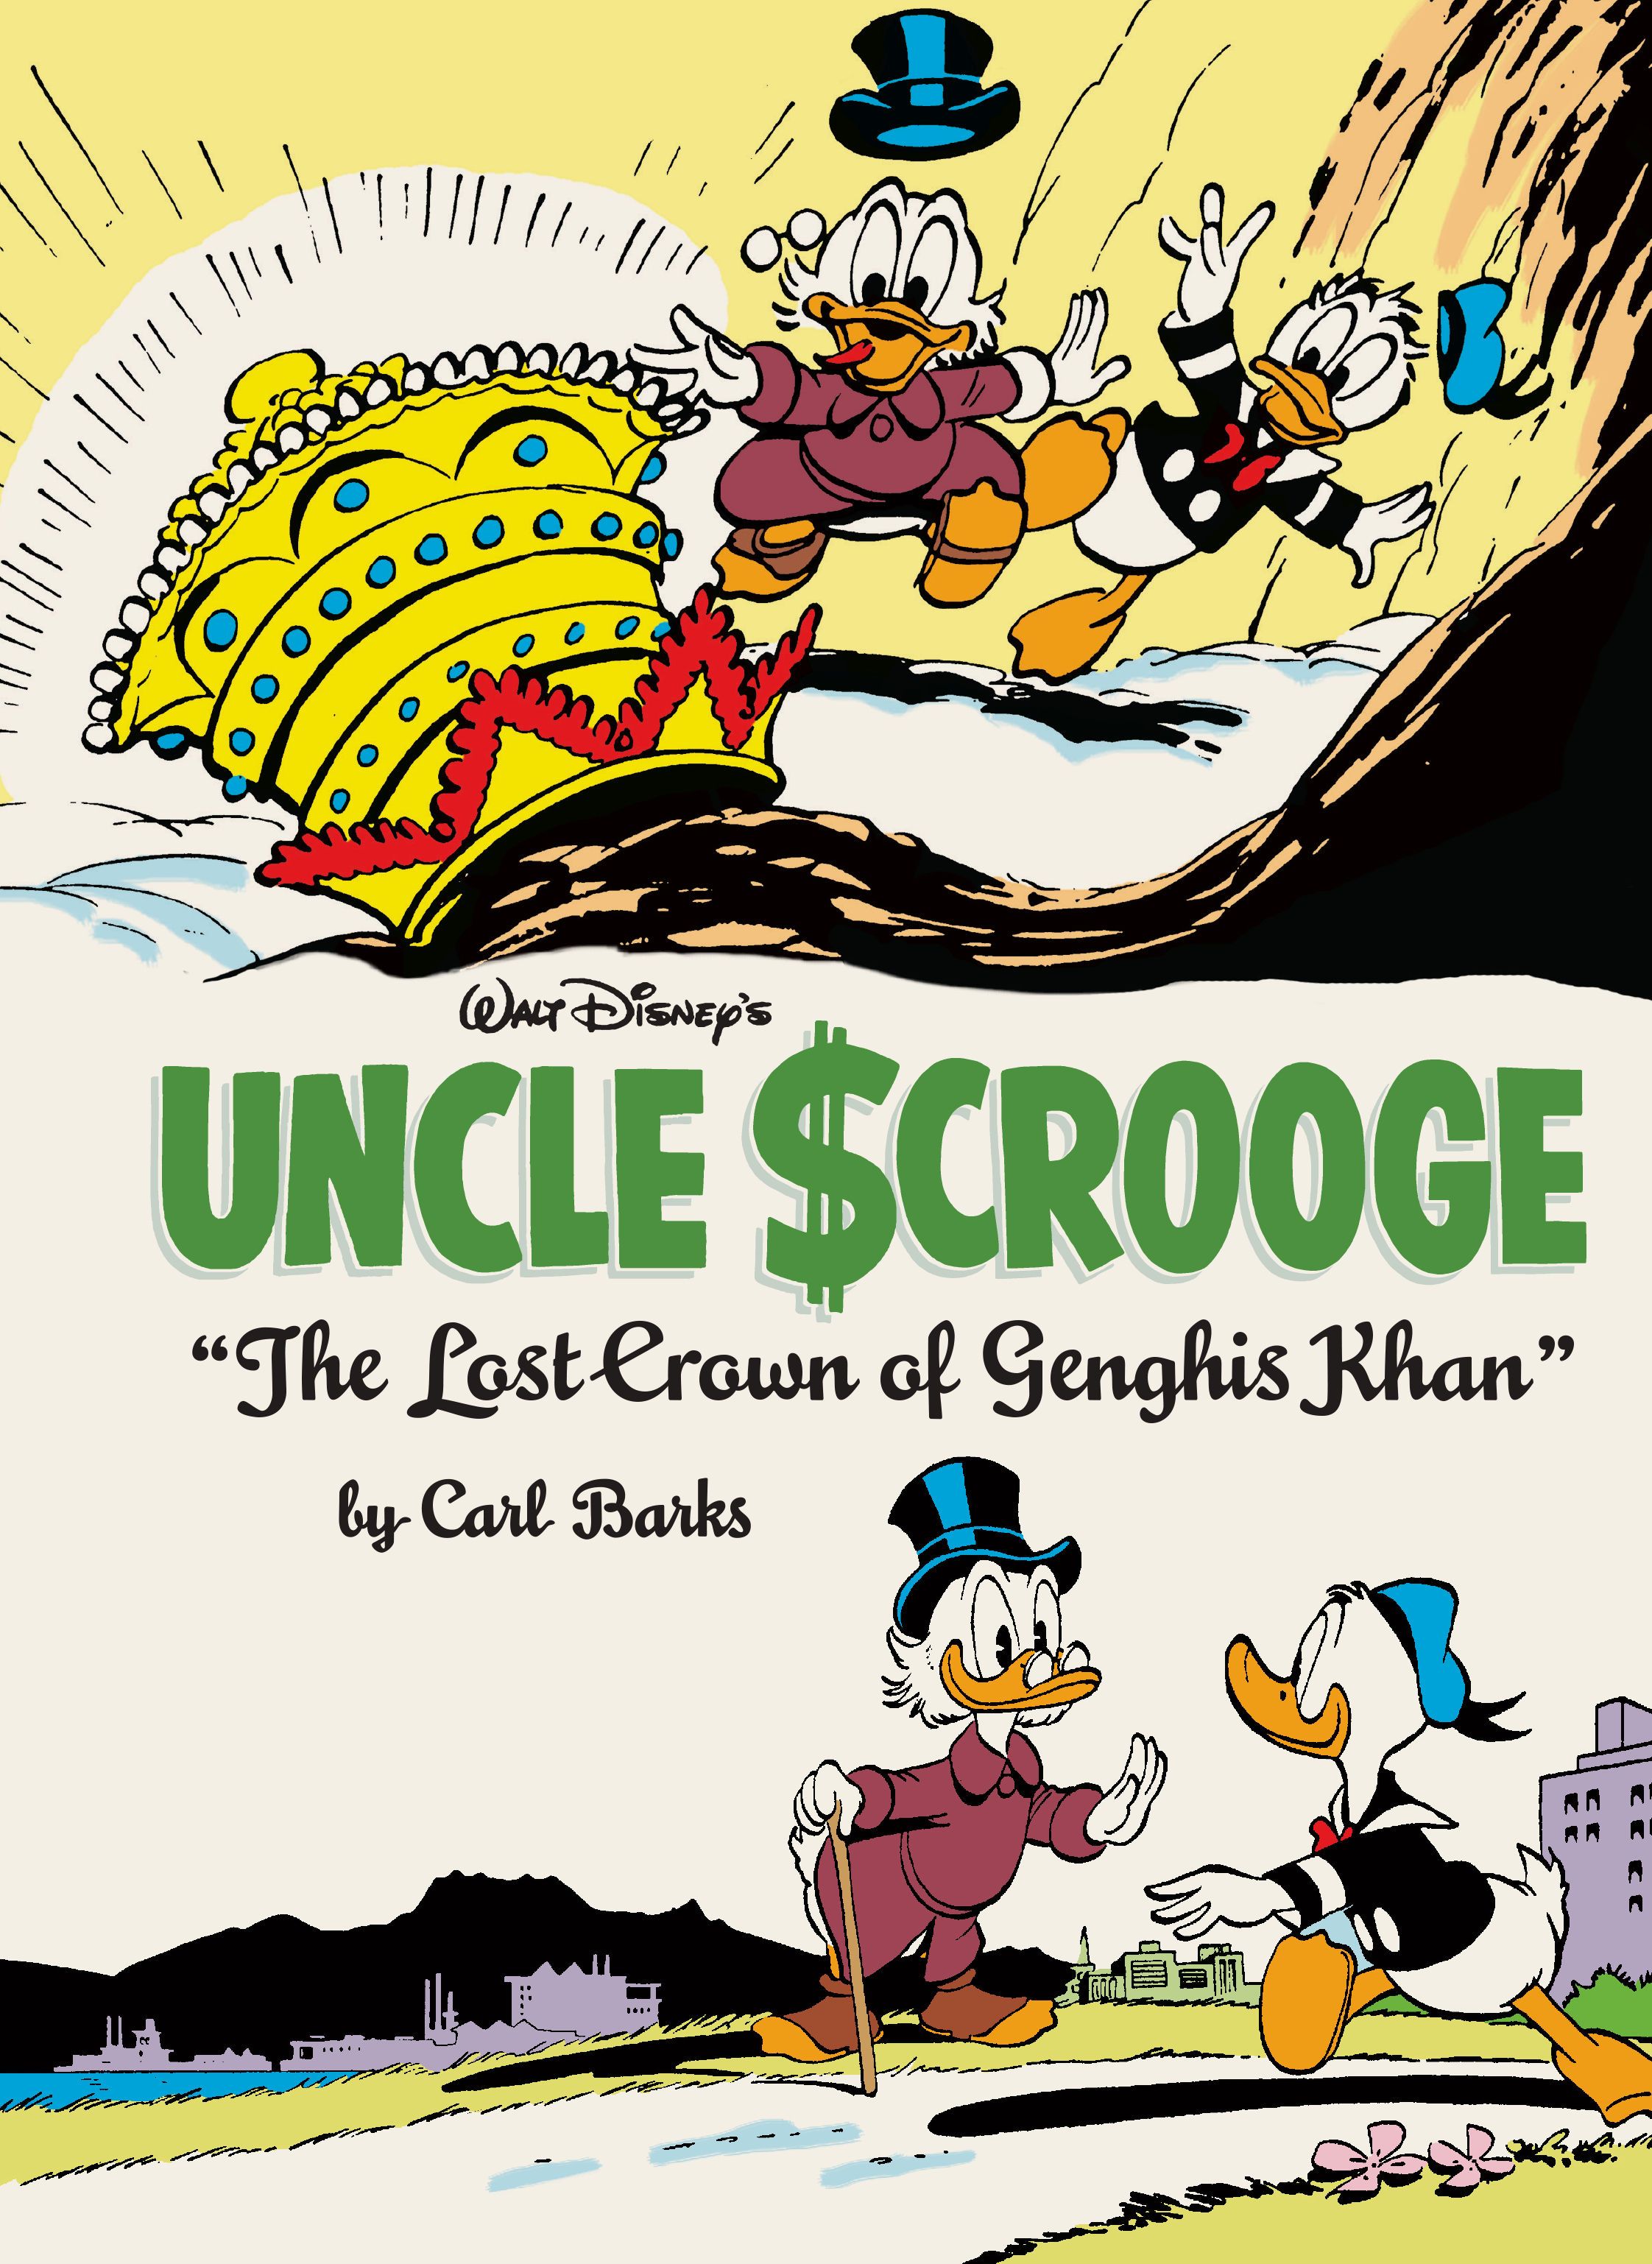 Complete Carl Barks Disney Library Hardcover Volume 16 Walt Disney's Uncle Scrooge The Lost Crown of Genghis Khan